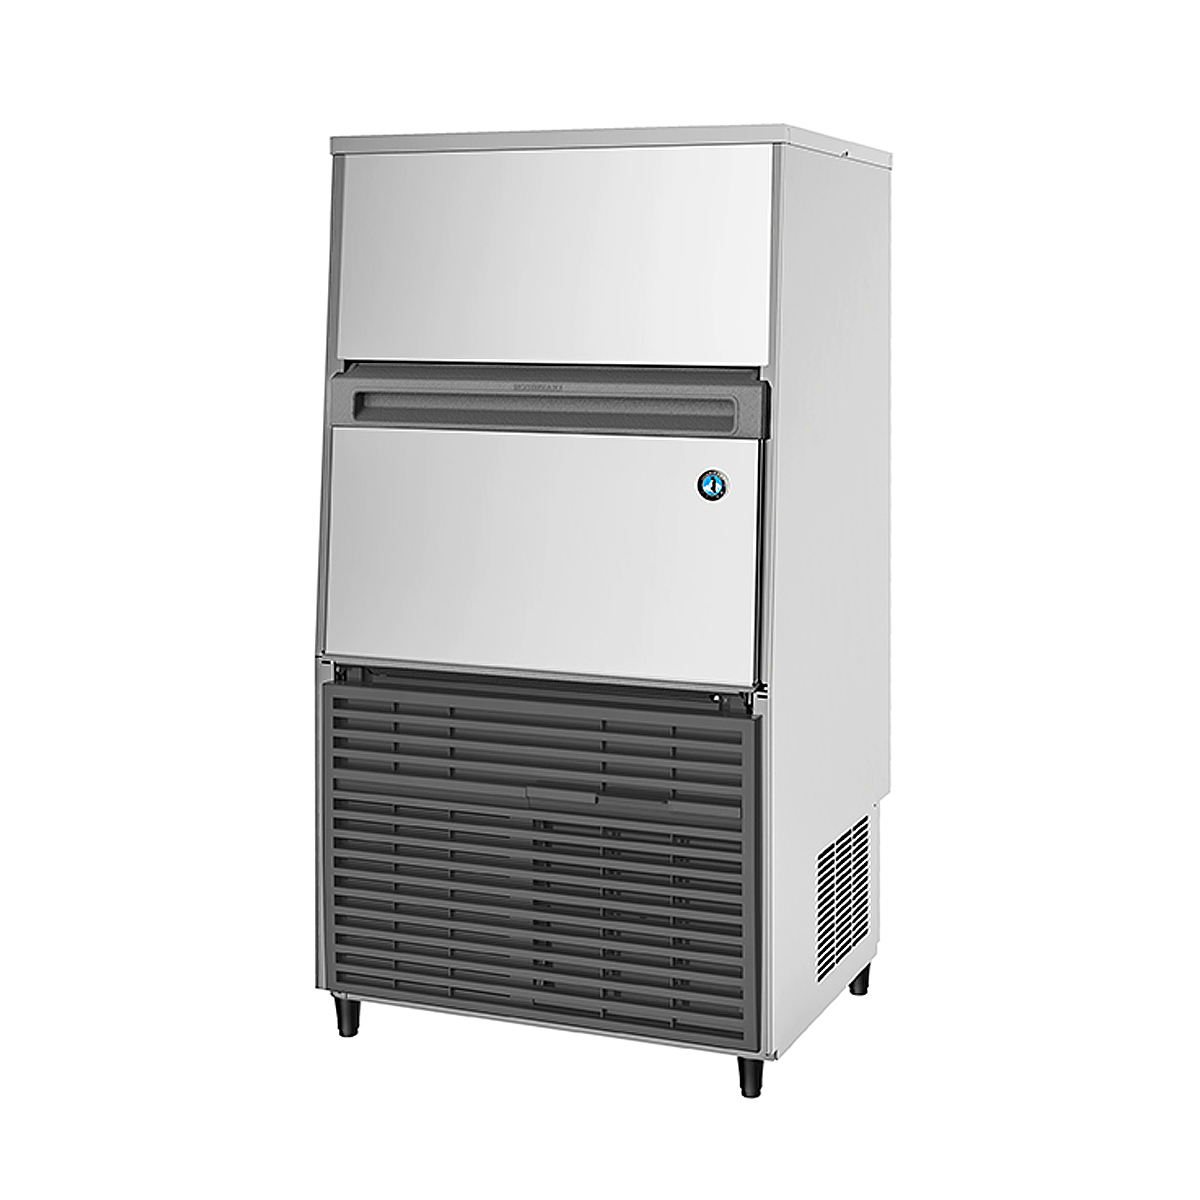 星崎-IM系列一体式方冰制冰机